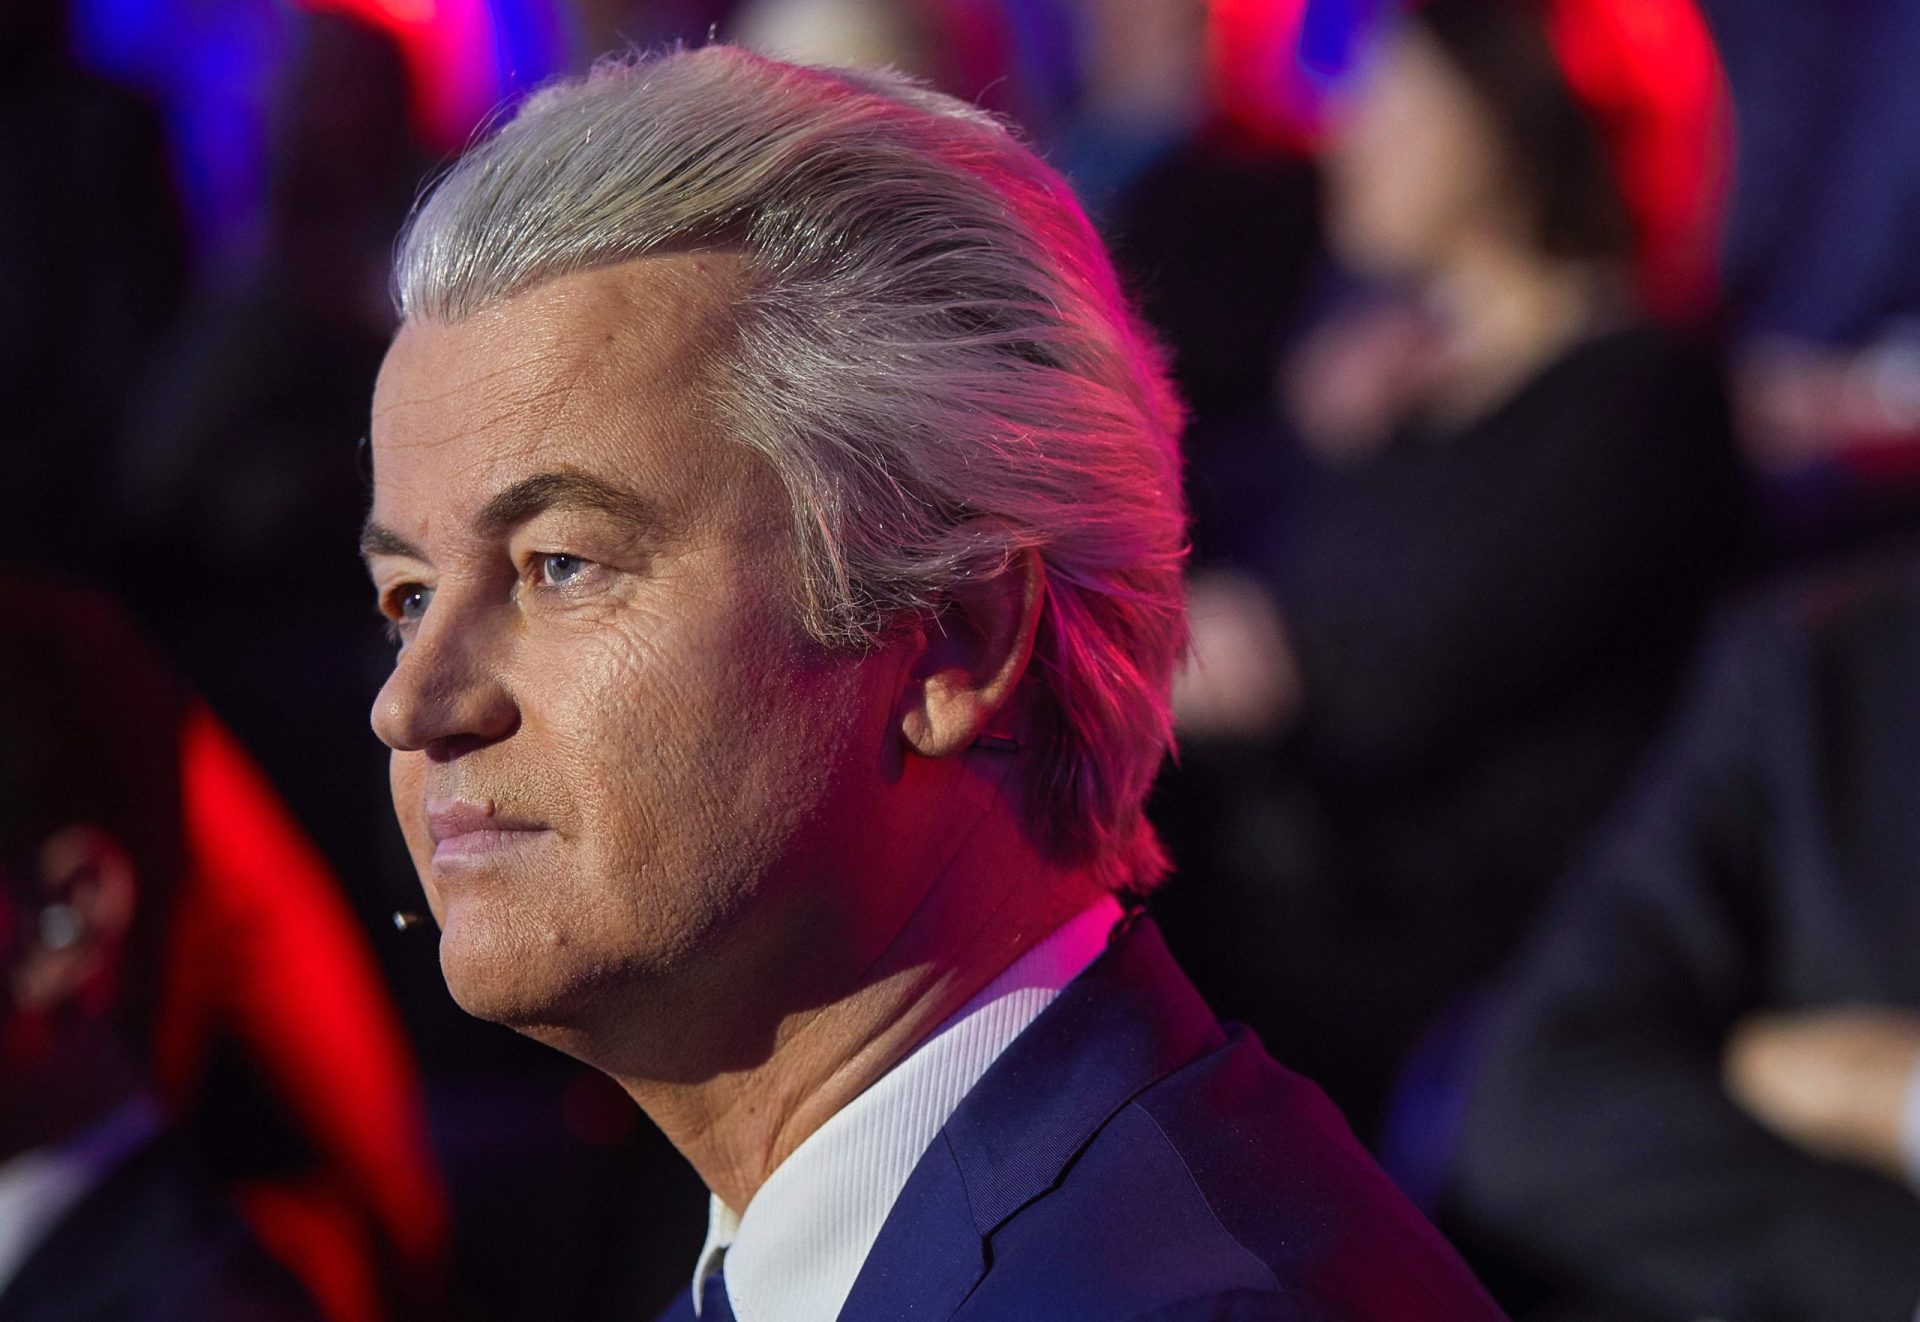 Wilders. O paladino anti-islão que promete uma revolução